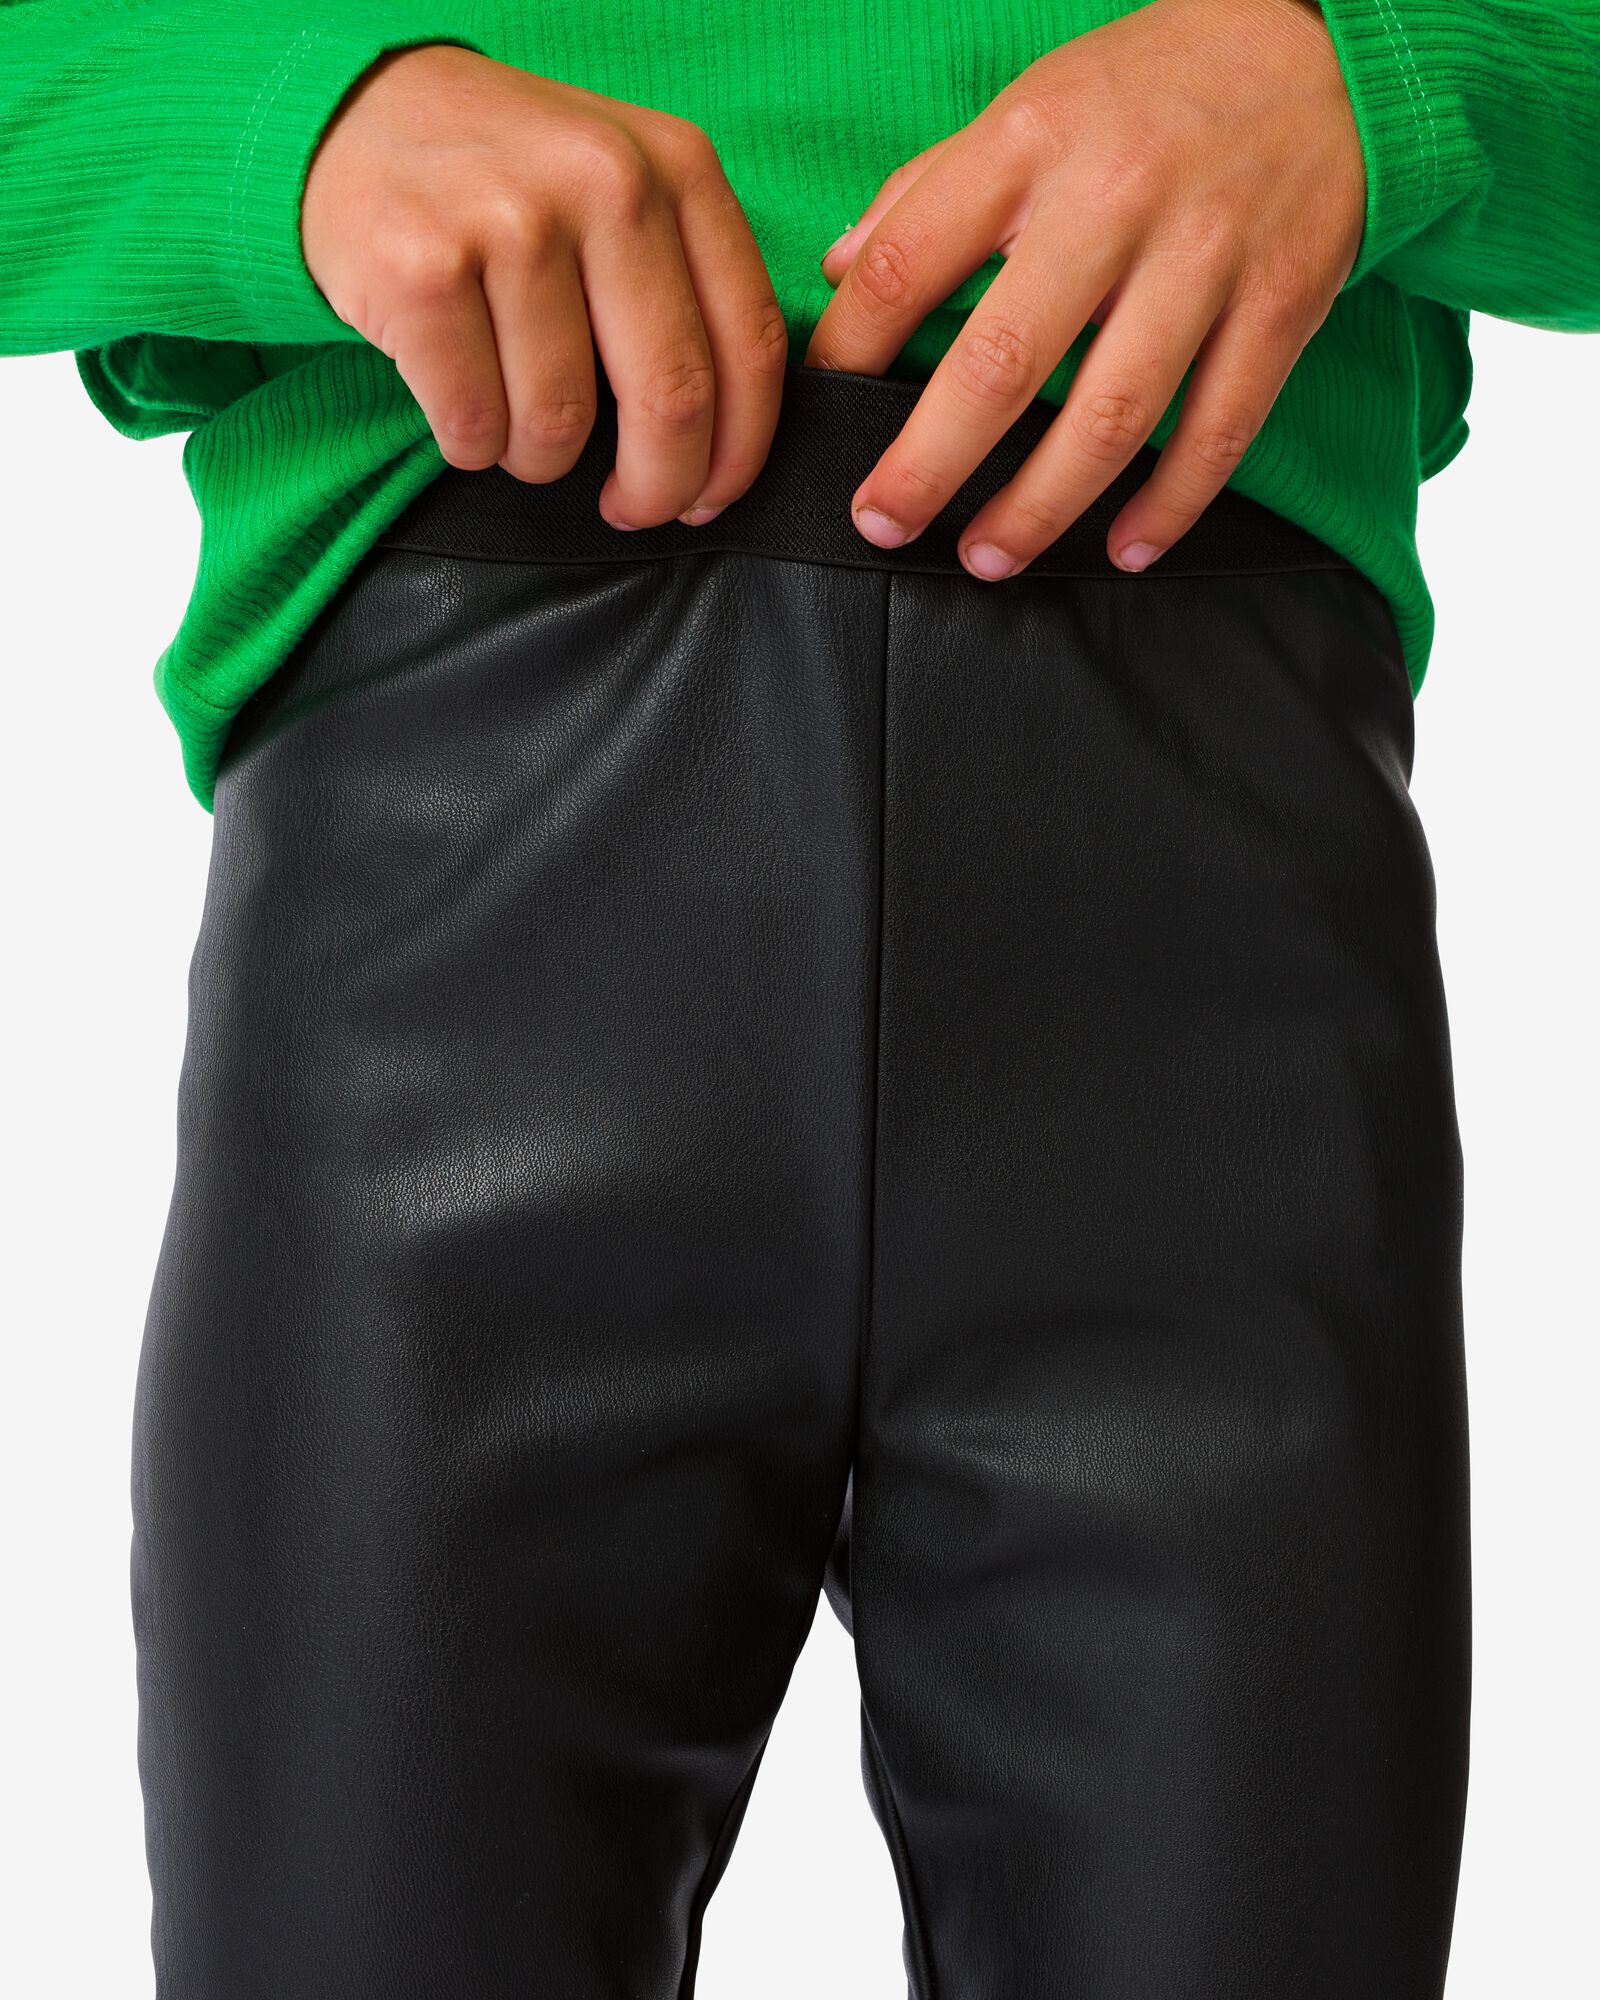 kinder legging kunstleer zwart zwart - 1000032431 - HEMA